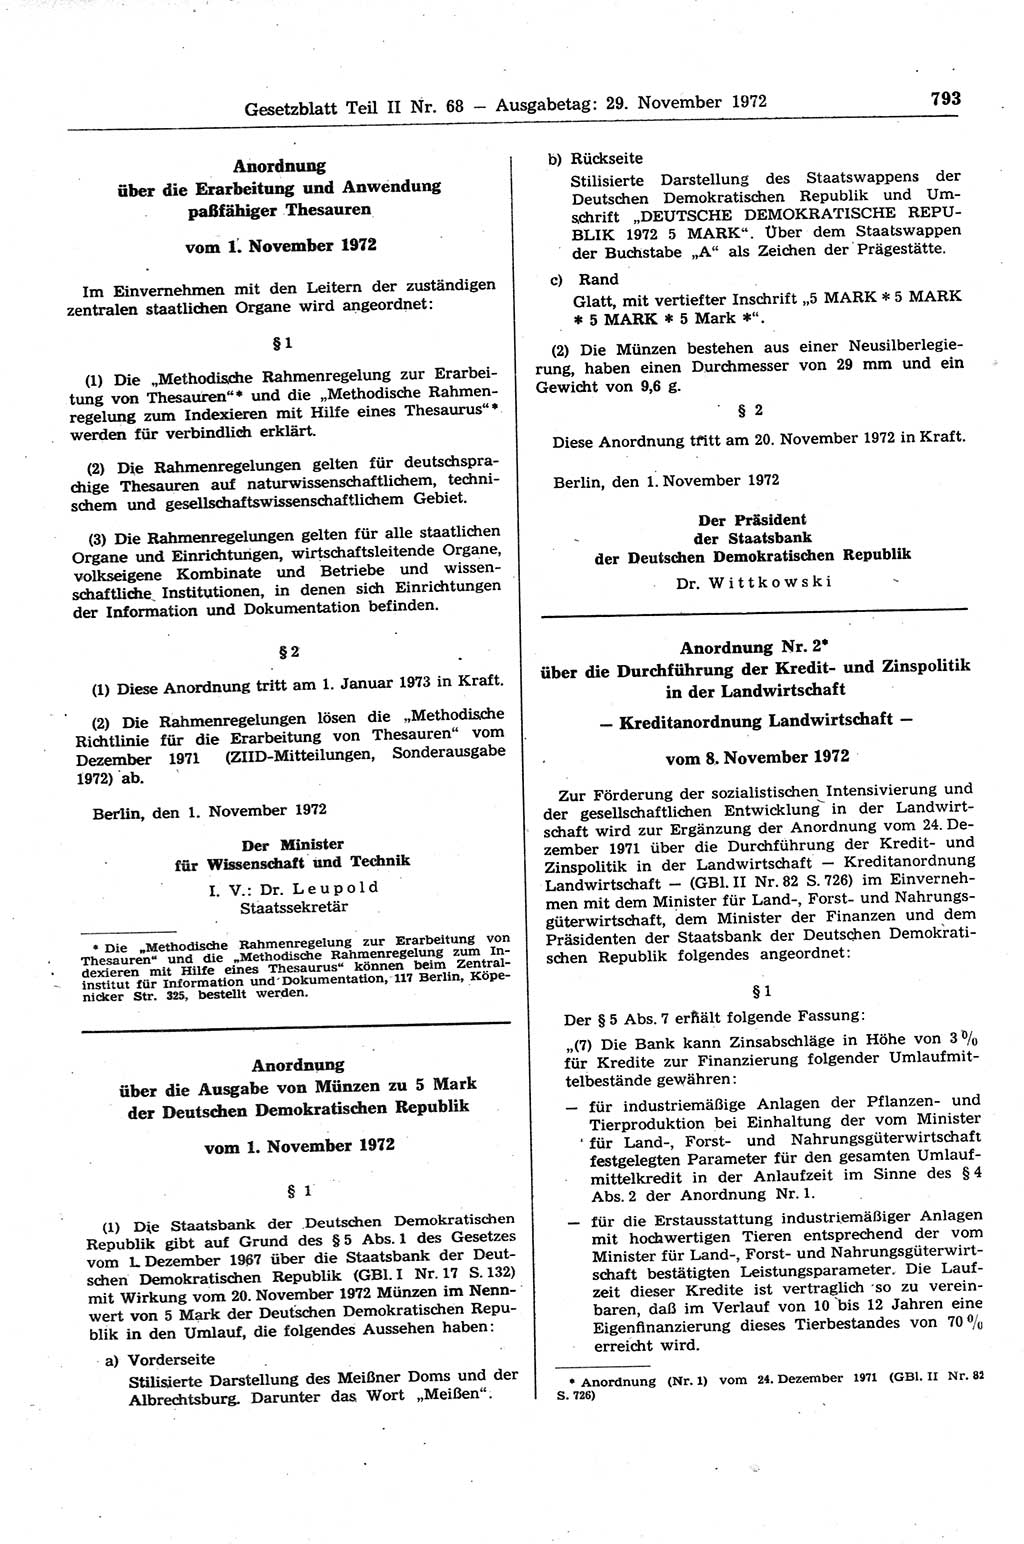 Gesetzblatt (GBl.) der Deutschen Demokratischen Republik (DDR) Teil ⅠⅠ 1972, Seite 793 (GBl. DDR ⅠⅠ 1972, S. 793)